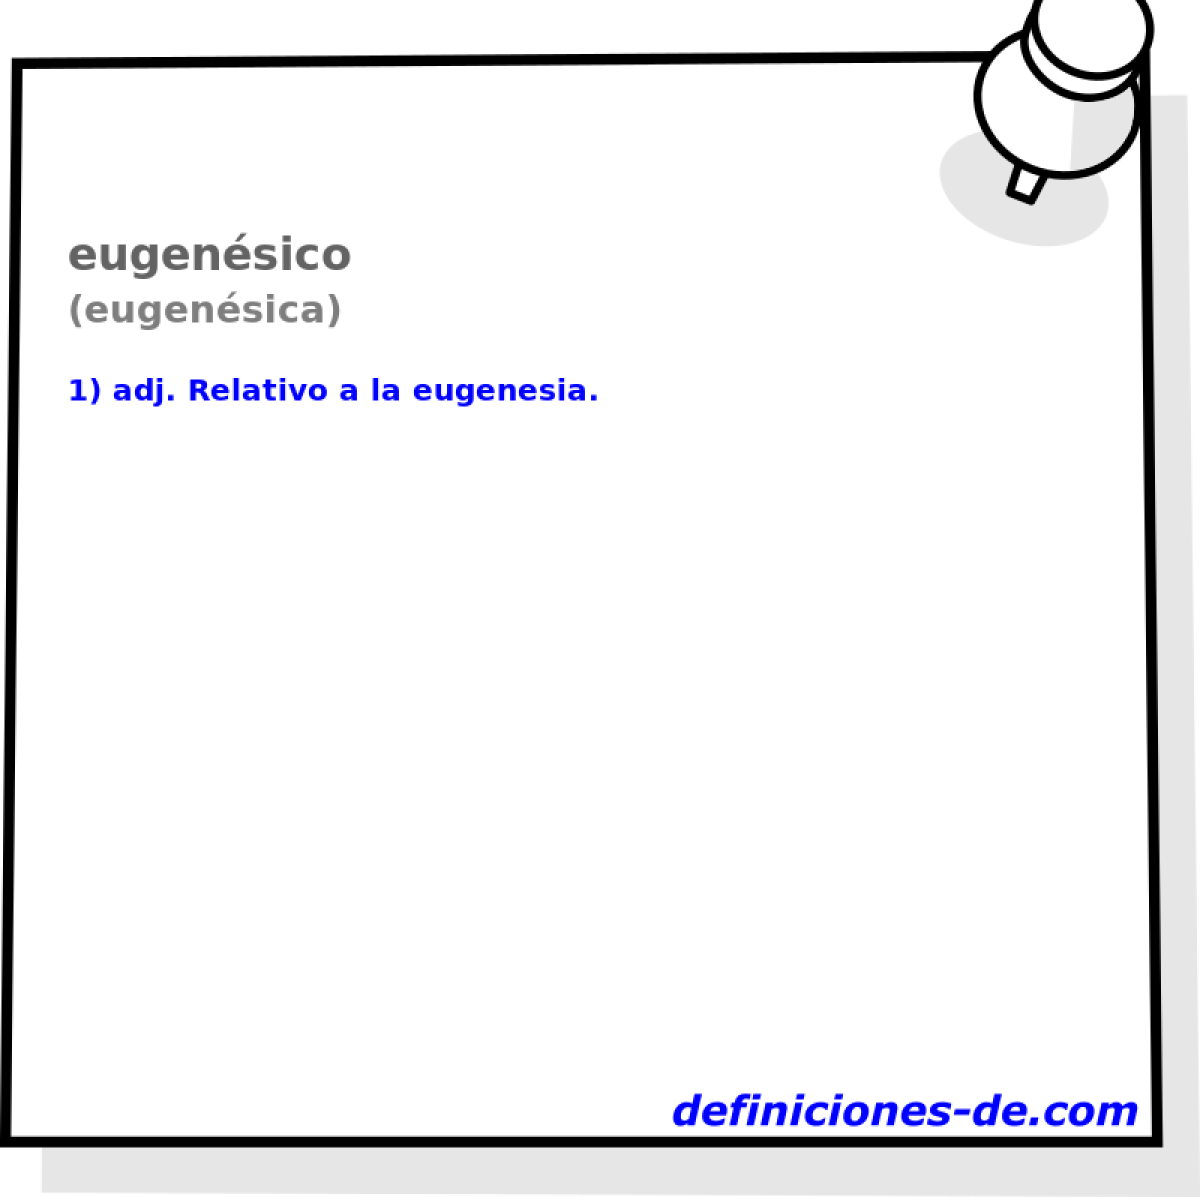 eugensico (eugensica)